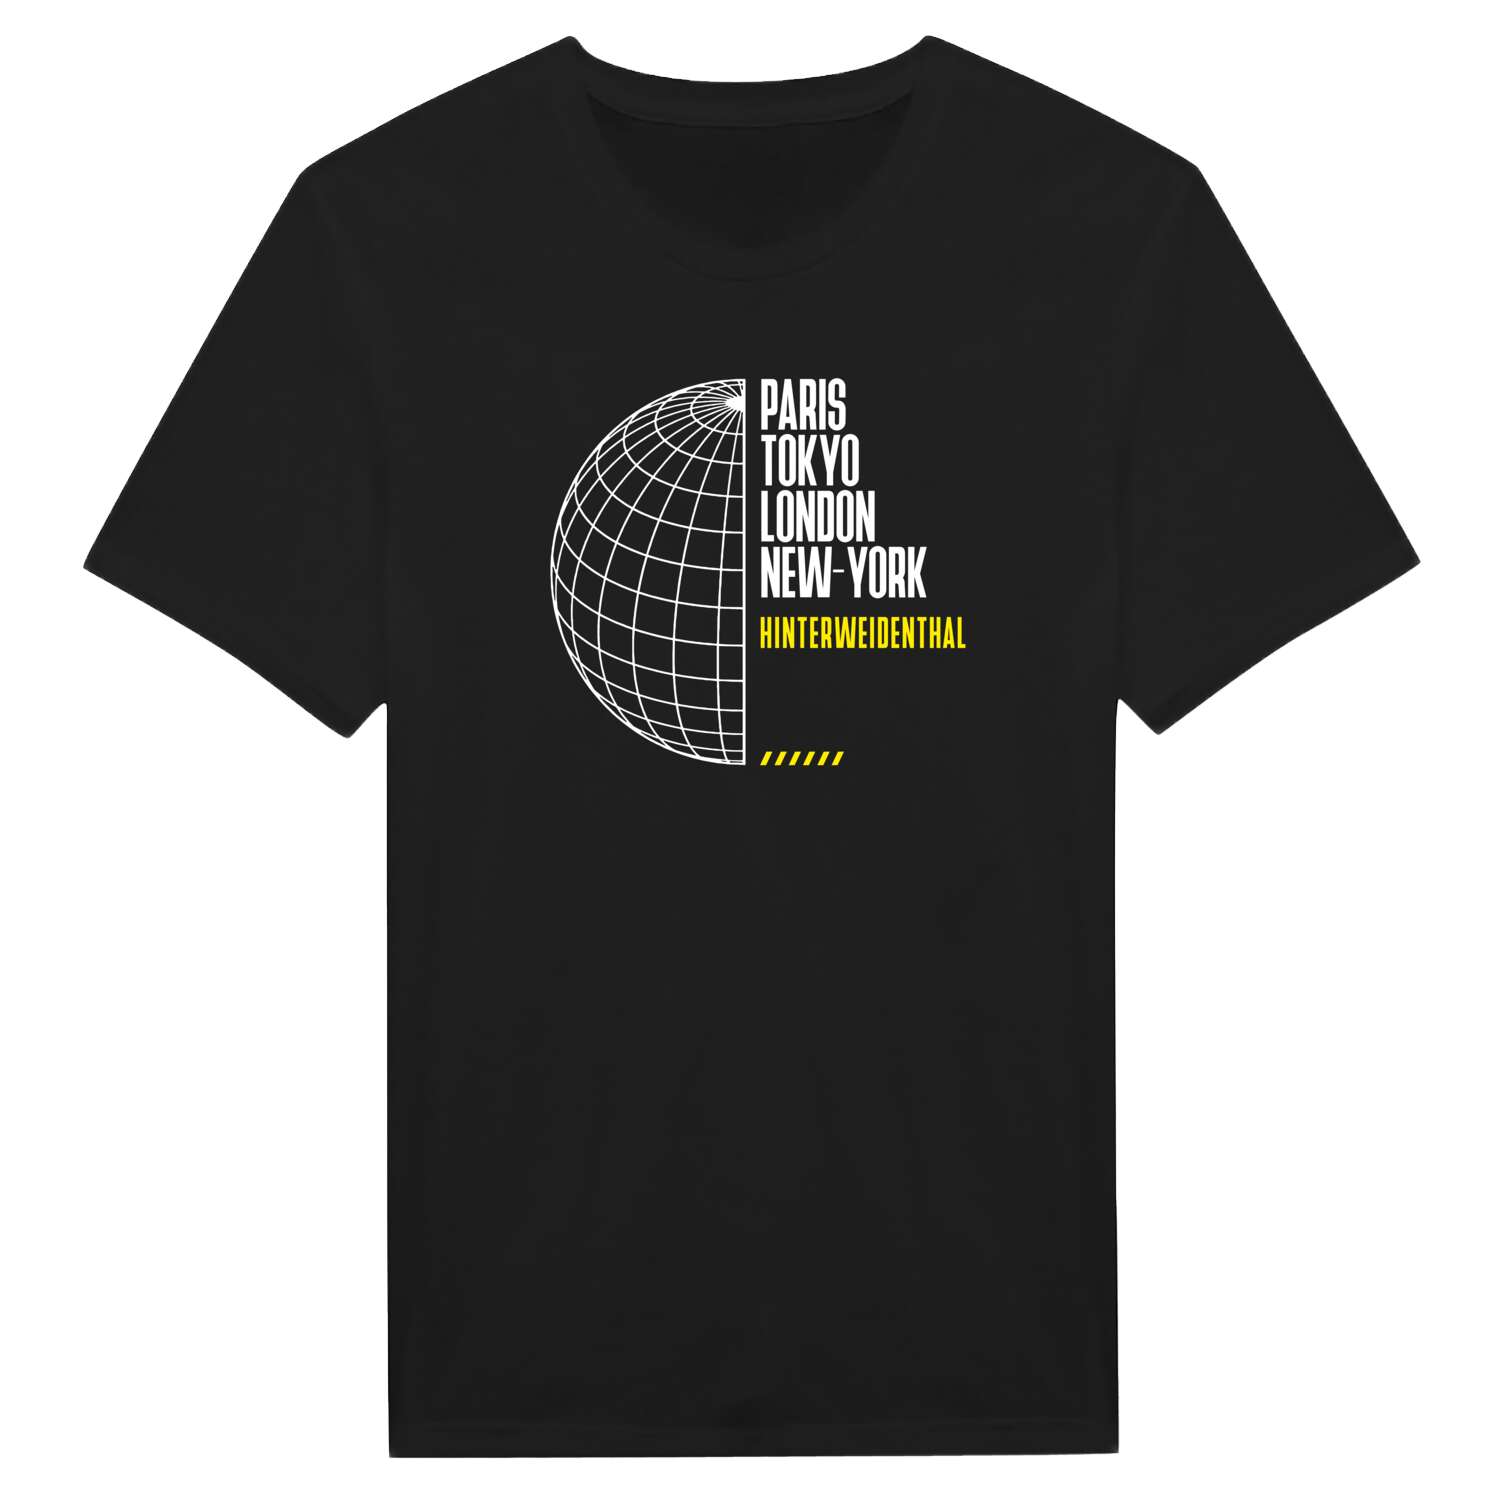 Hinterweidenthal T-Shirt »Paris Tokyo London«